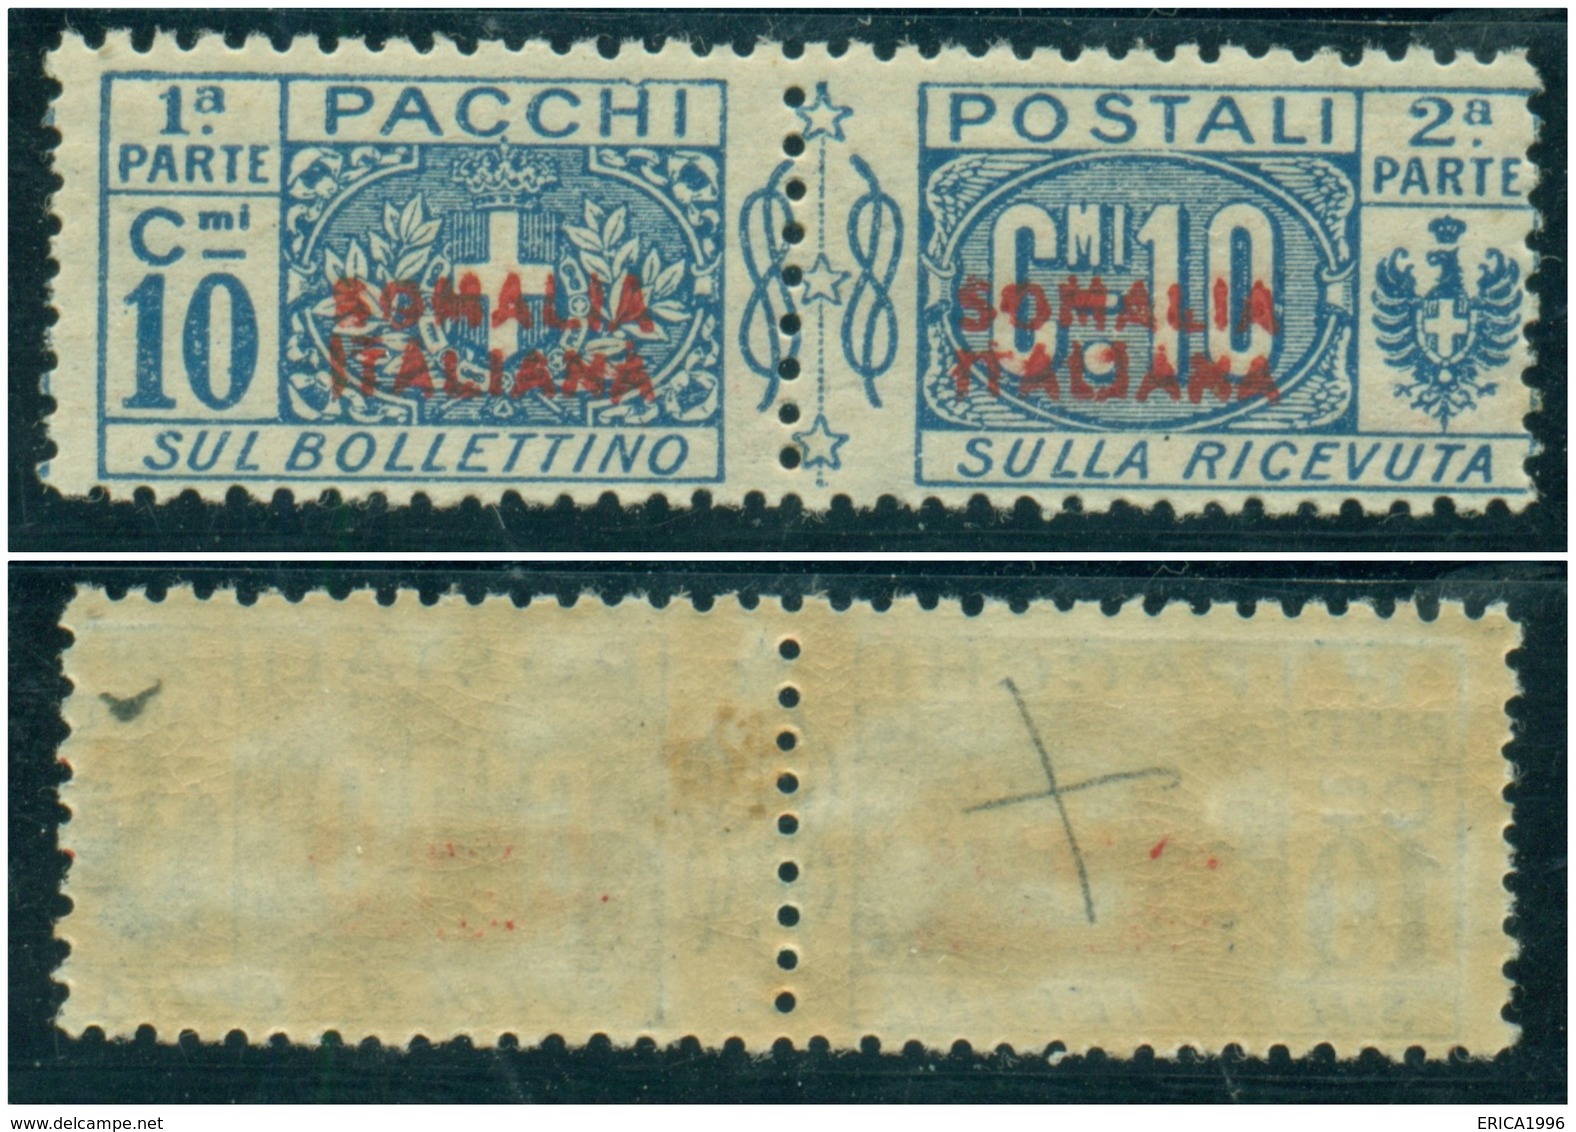 Z1350 ITALIA COLONIE Somalia Italiana 1926 Pacchi Postali 10 C. MNH Sassone N. 31, Valore Catalogo € 110, Ottime Condiz. - Somalia